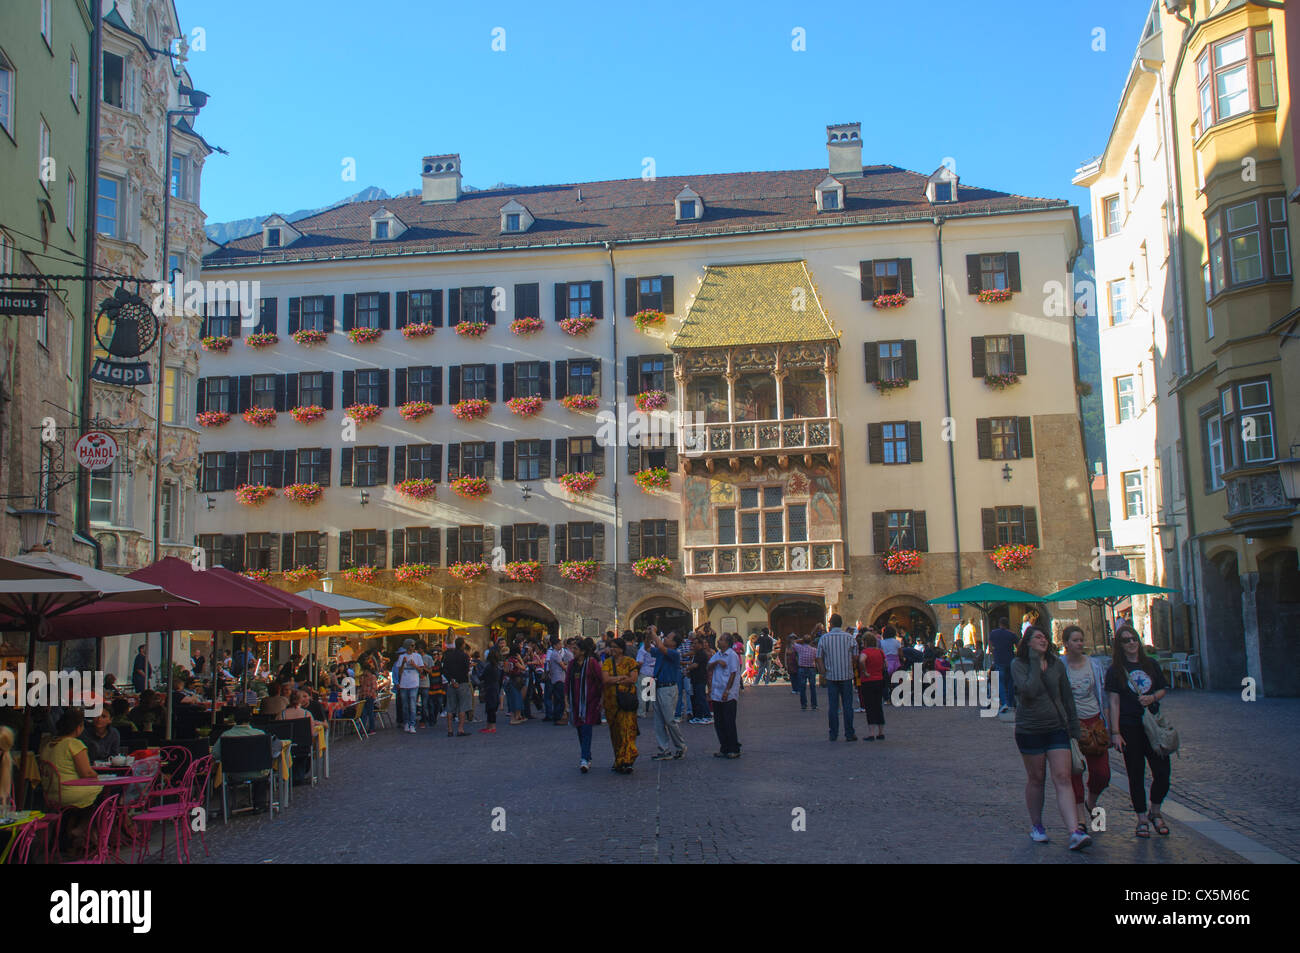 Austria, Innsbruck old city Herzog-Friedrich Strasse Stock Photo